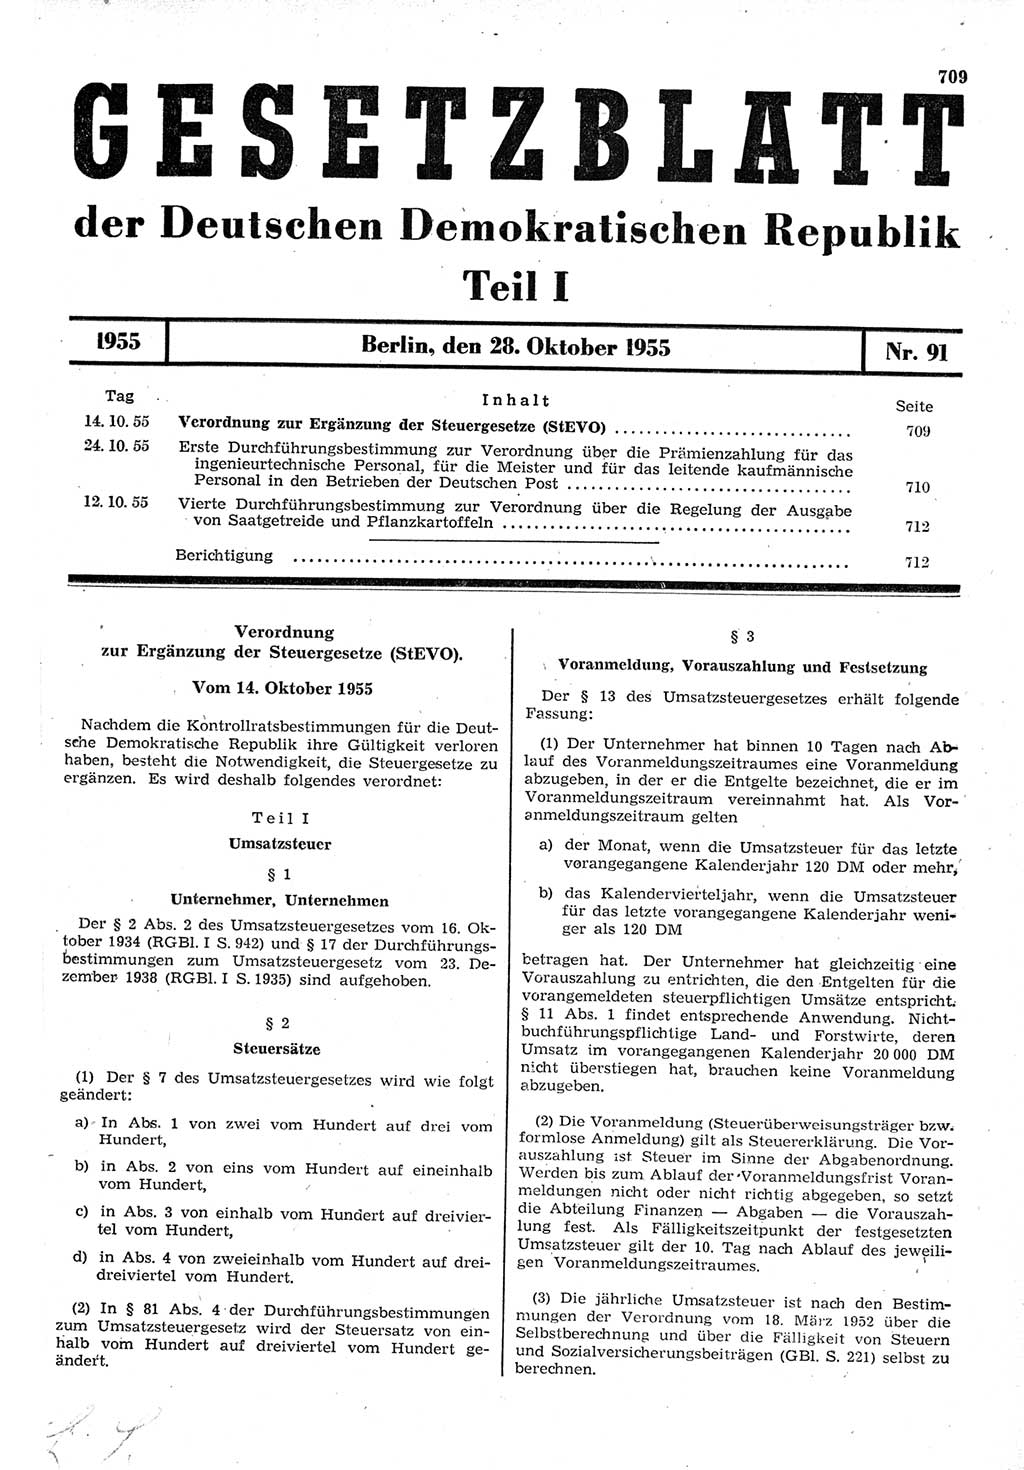 Gesetzblatt (GBl.) der Deutschen Demokratischen Republik (DDR) Teil Ⅰ 1955, Seite 709 (GBl. DDR Ⅰ 1955, S. 709)